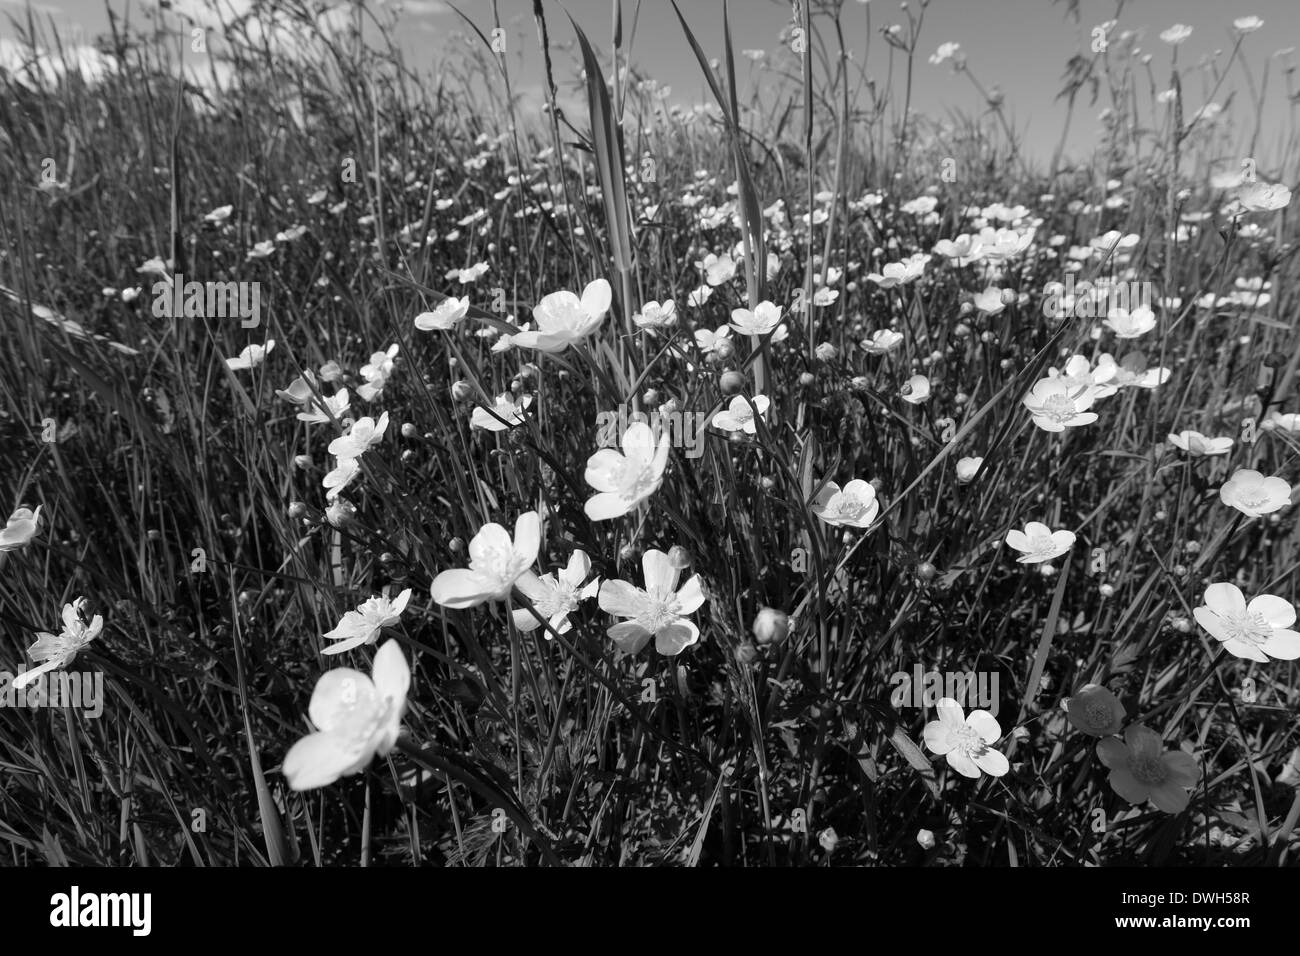 Fleurs de renoncule (Ranunculus) dans un pré en fleurs au printemps. Photographie en noir et blanc. Banque D'Images